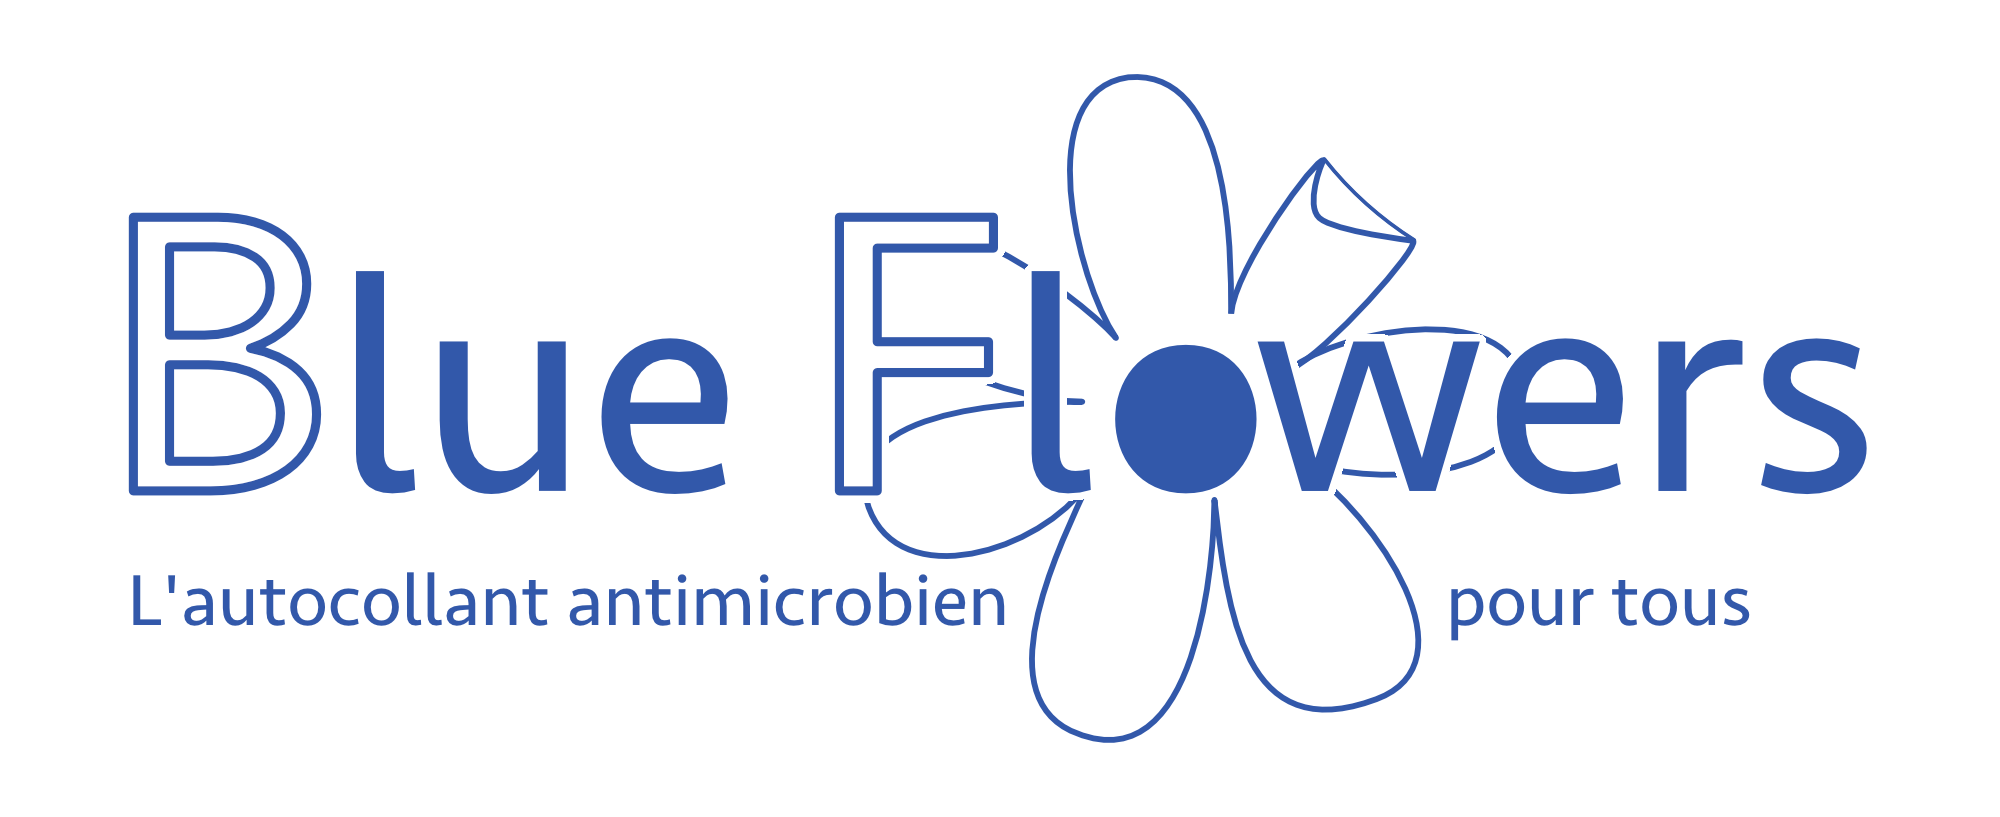 Blue Flowers L'autocollant antimicrobien pour tous